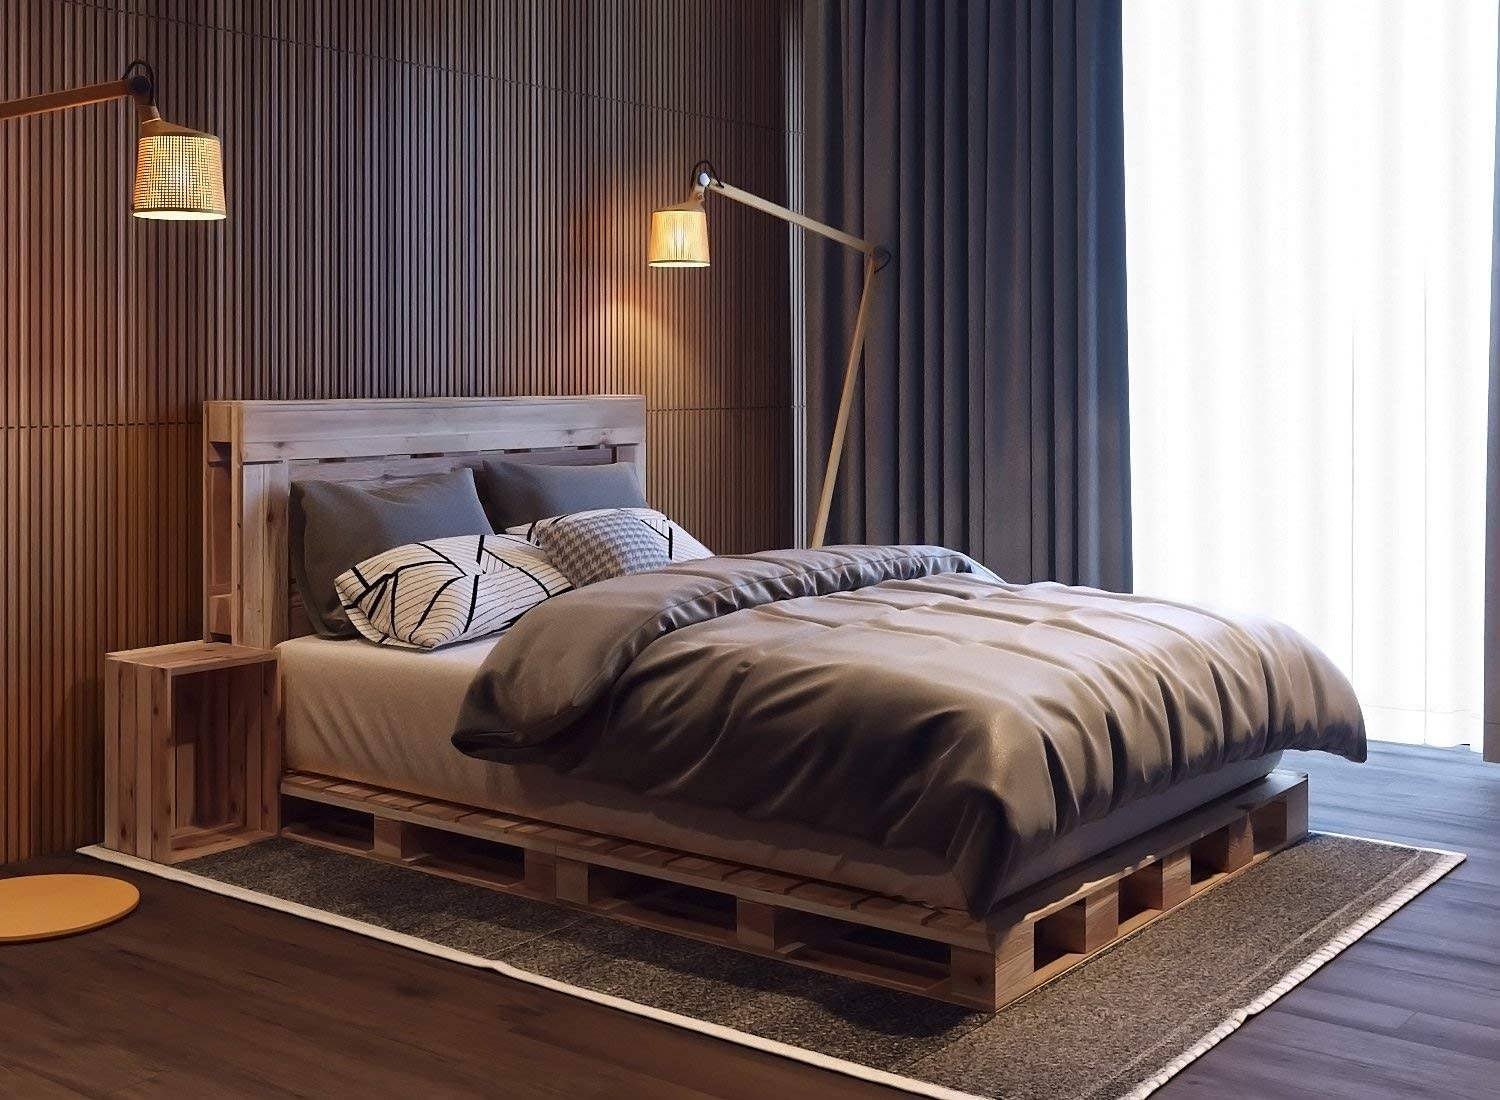 Bàn đầu giường kiểu thùng và khung giường bằng ván pallet tạo thêm yếu tố mộc mạc cho phòng ngủ hiện đại này, được trang trí với tông màu xám đậm